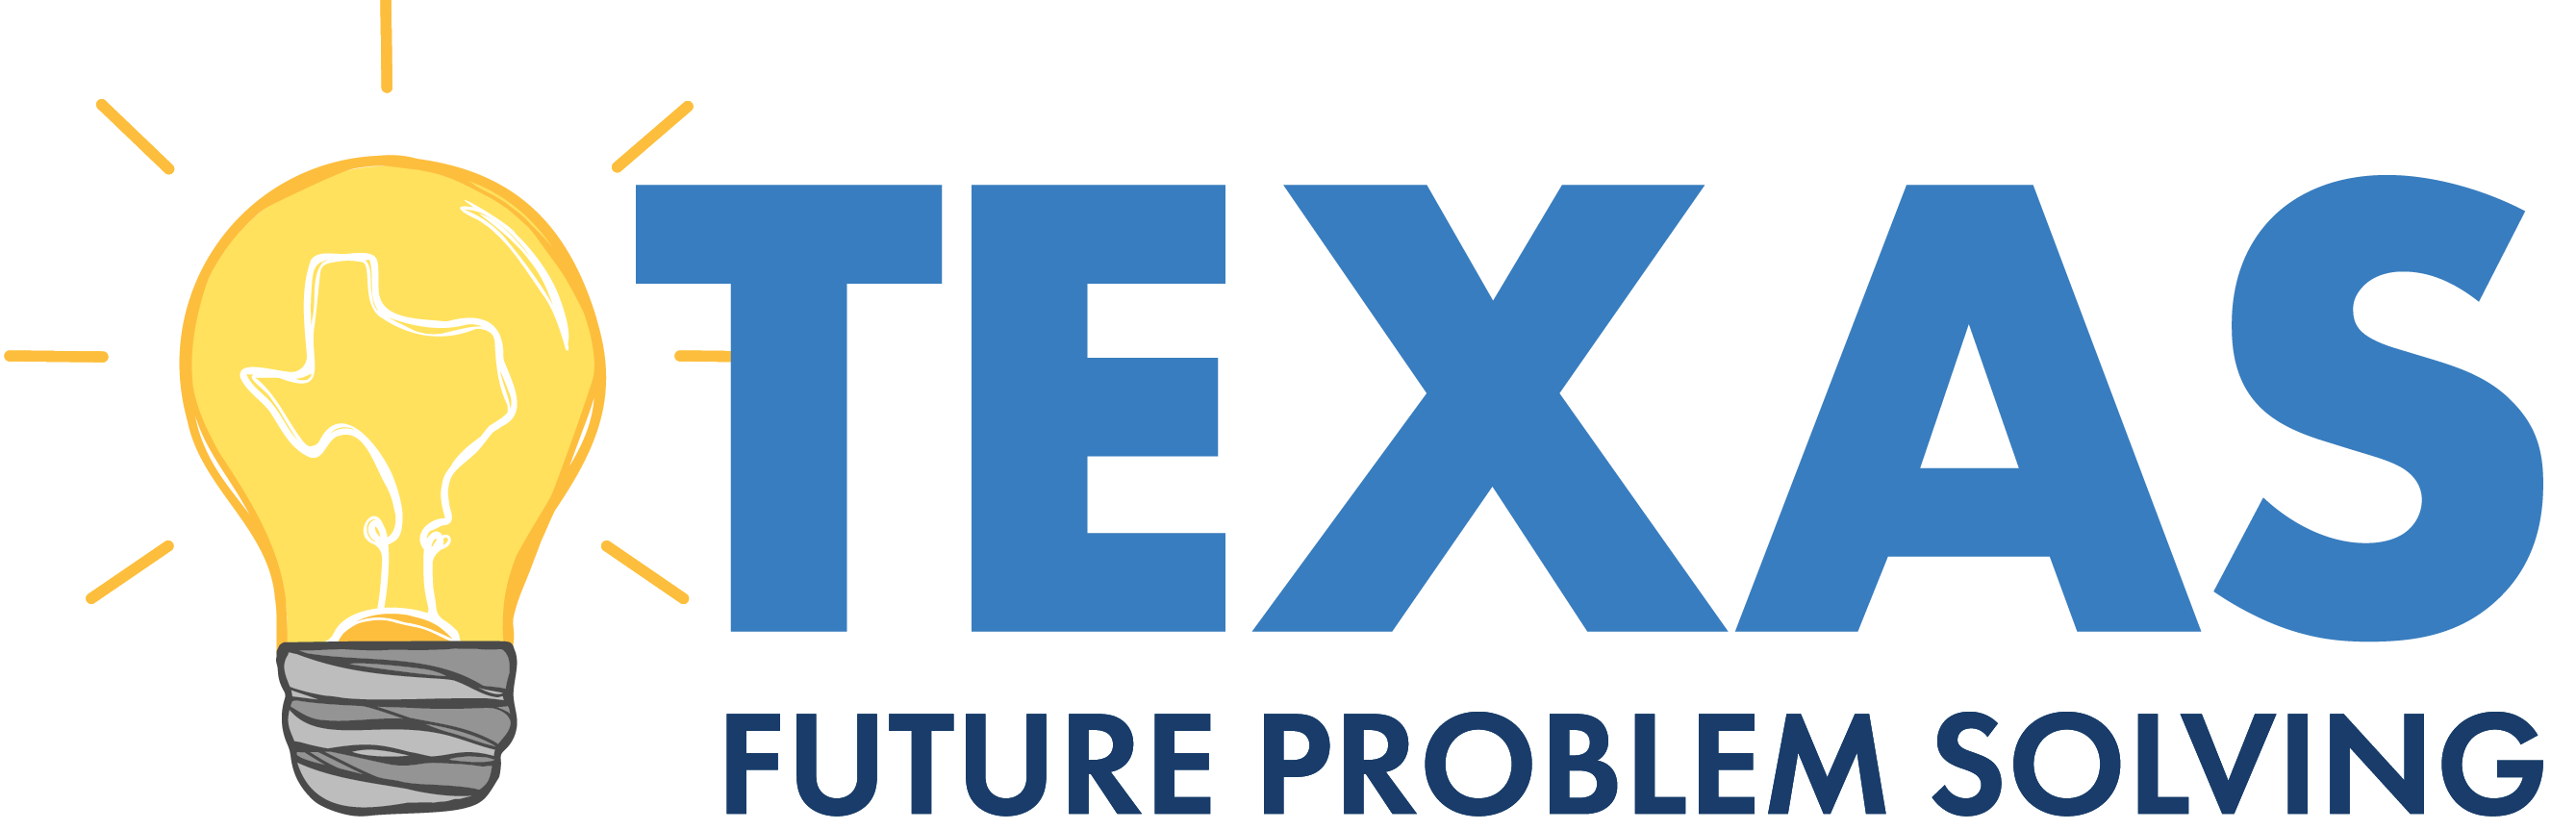 texas future problem solving